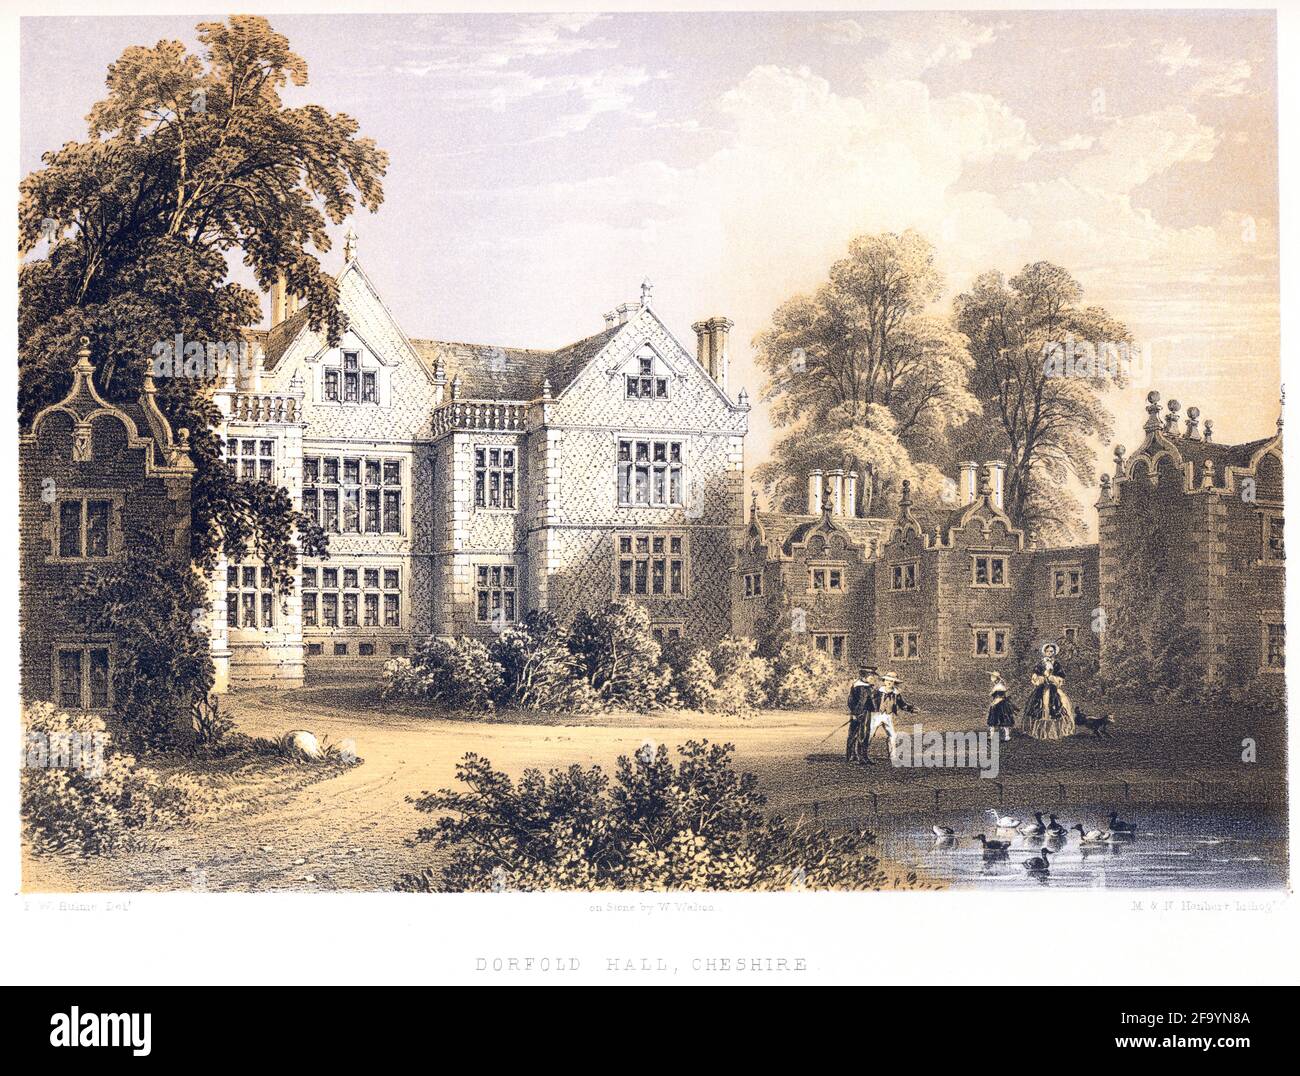 Lithotint de Dorfold Hall, Cheshire a numérisé à haute résolution à partir d'un livre imprimé en 1858. Je pensais libre de droits d'auteur. Banque D'Images